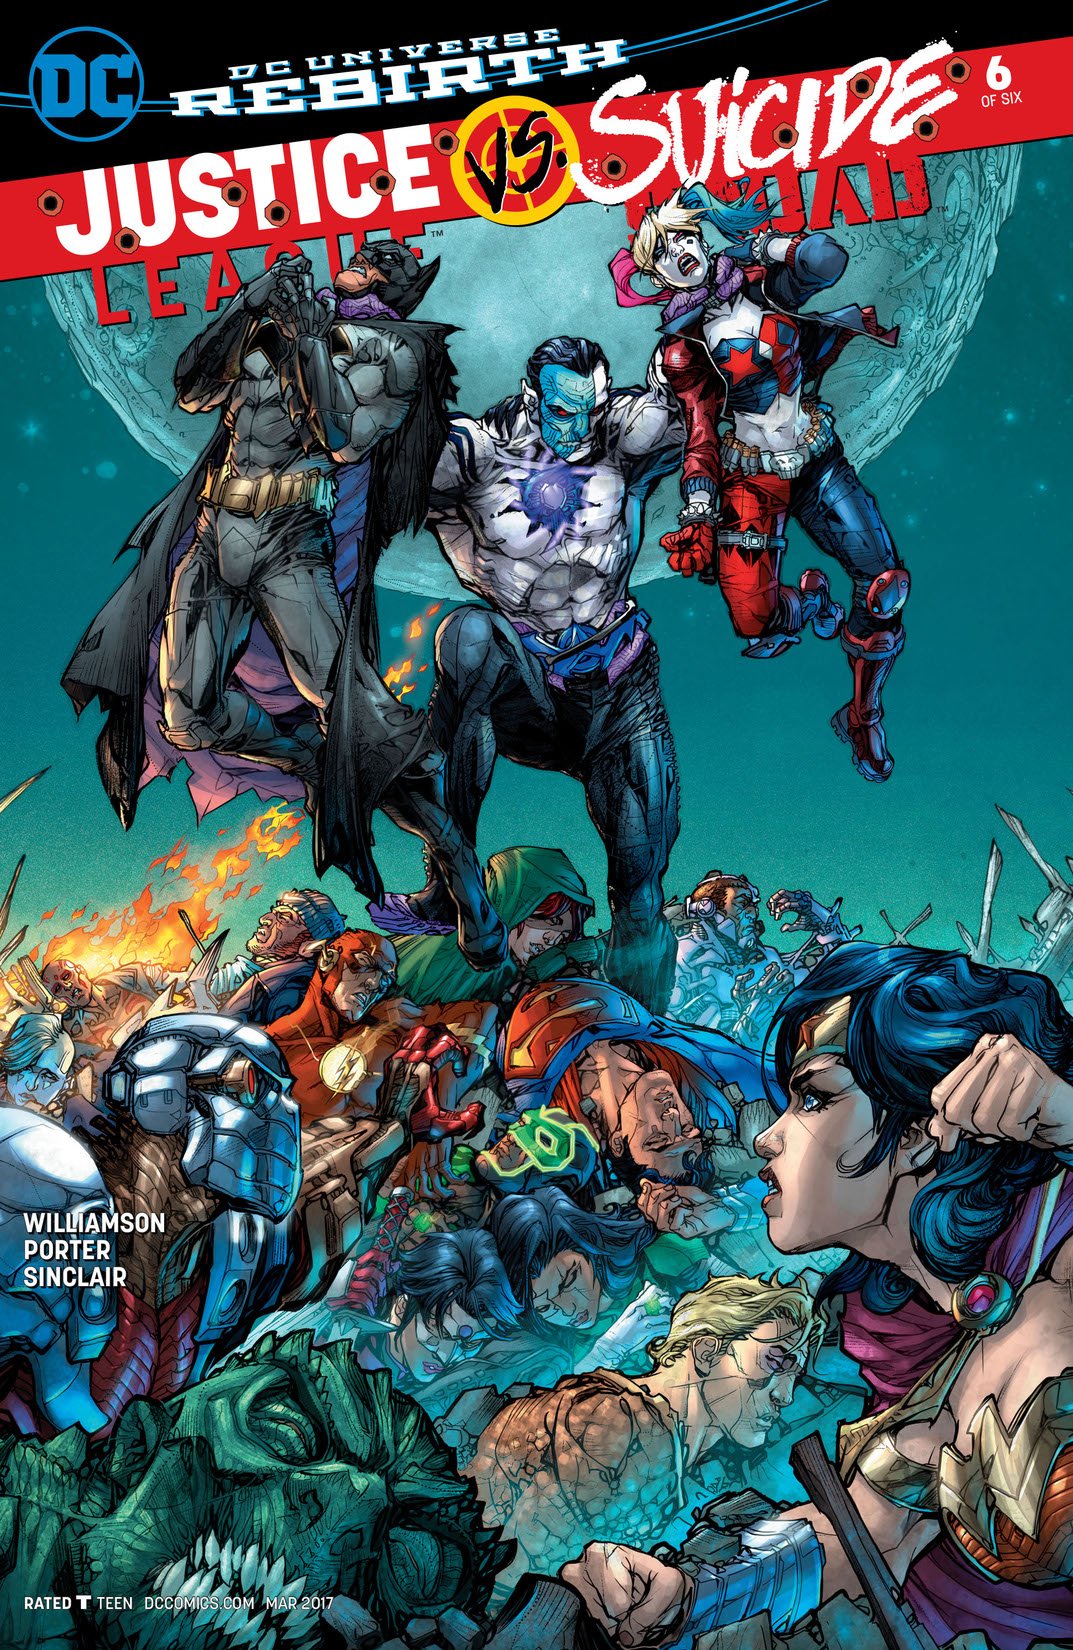 Justice League vs. Suicide Squad #6 preview images